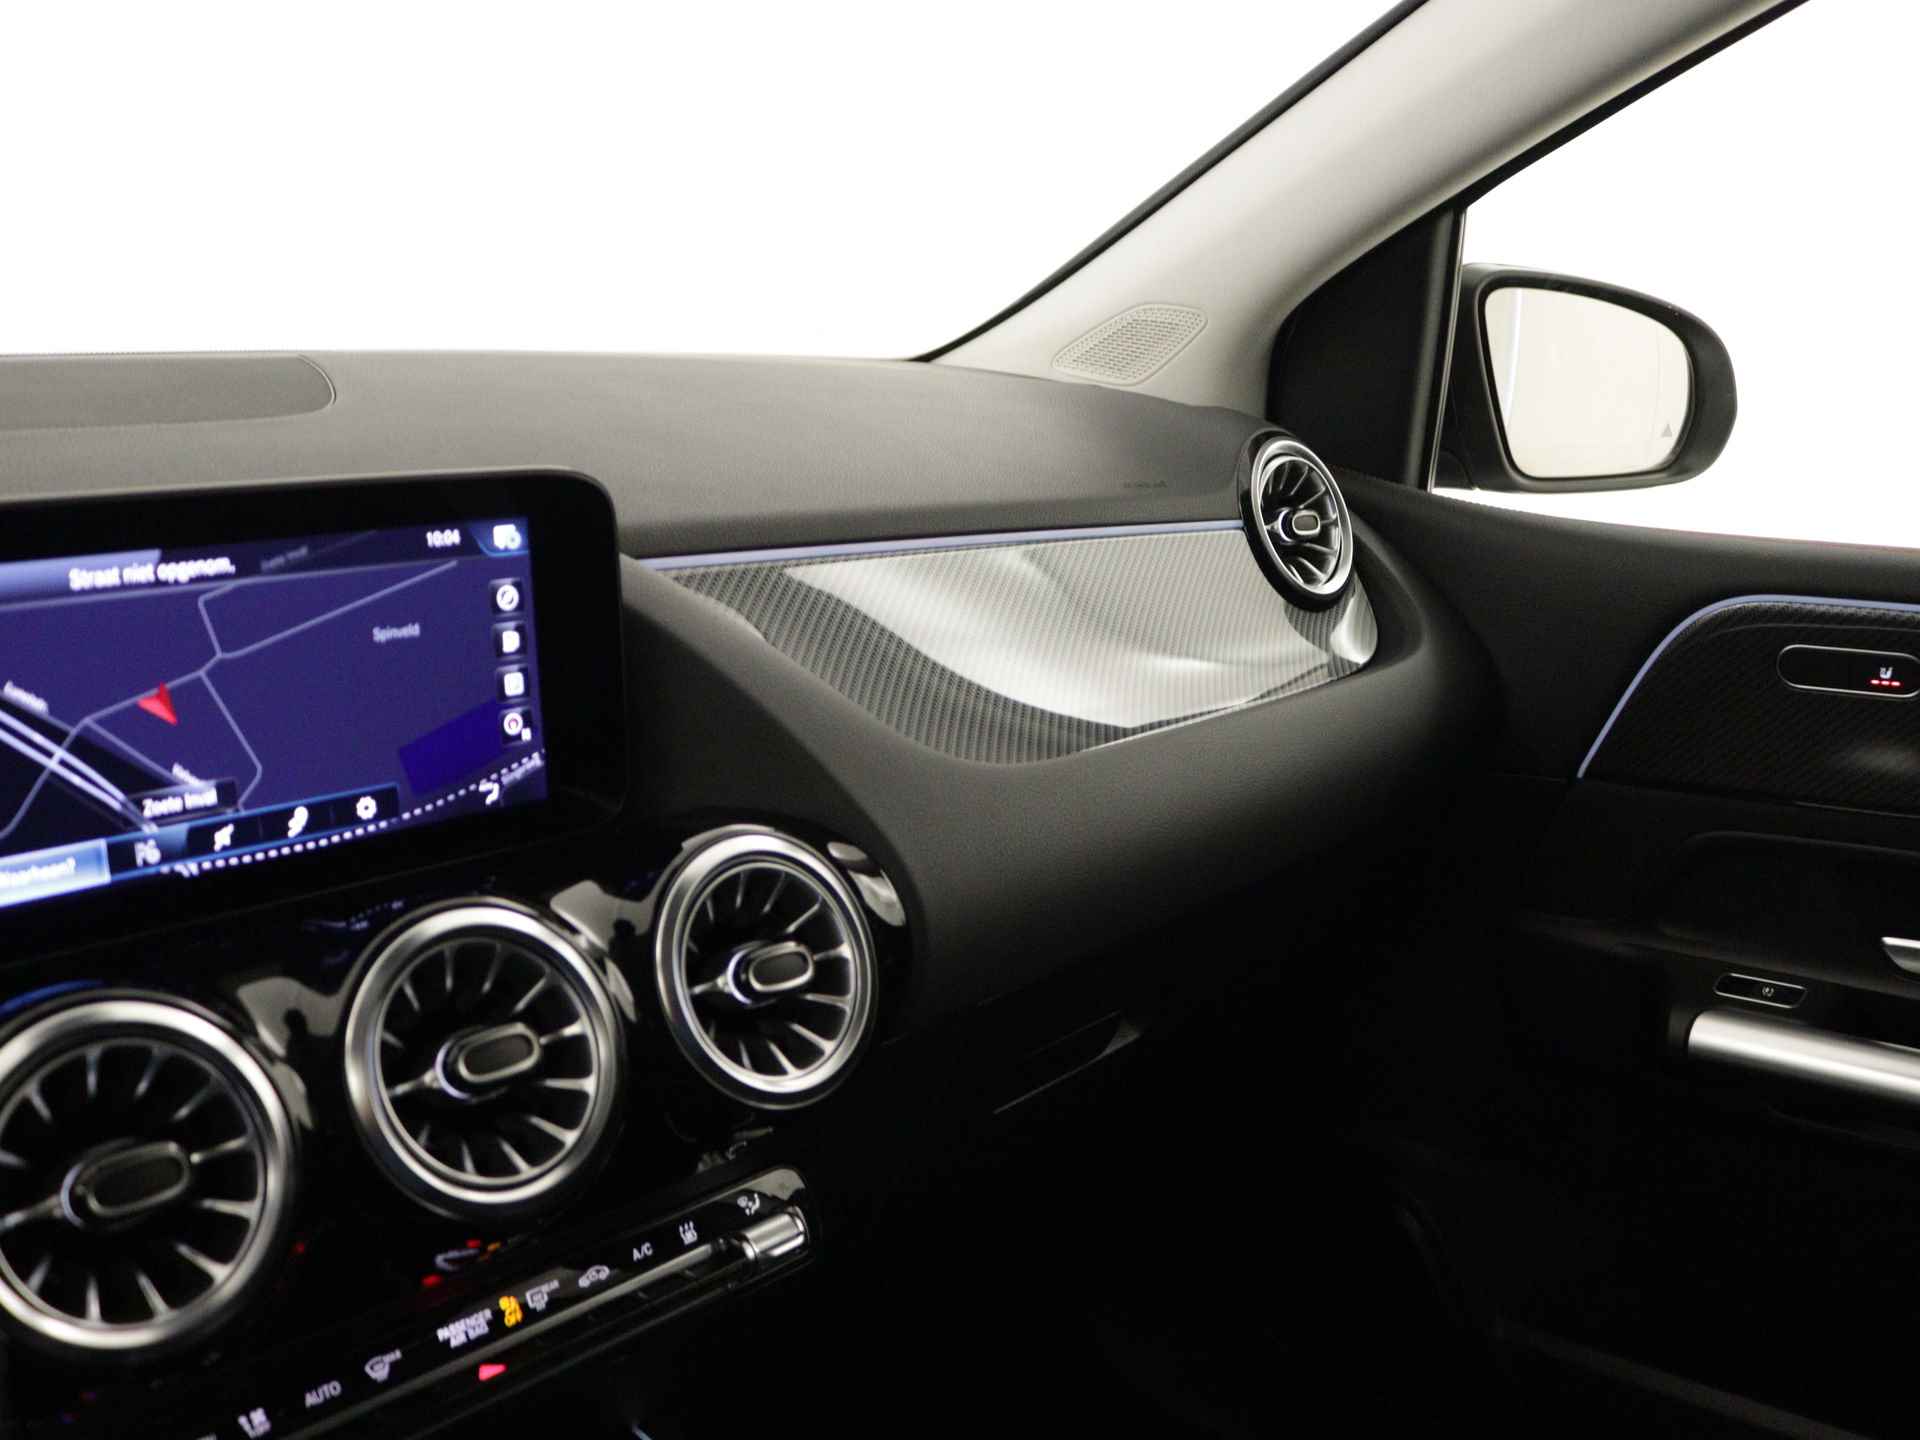 Mercedes-Benz B-Klasse 250 e AMG Line Limited Multispaaks lichtmetalen velgen | MBUX wide screen | Navigatie | Parking support | Inclusief 24 maanden Mercedes-Benz Certified garantie voor Europa. | - 8/45